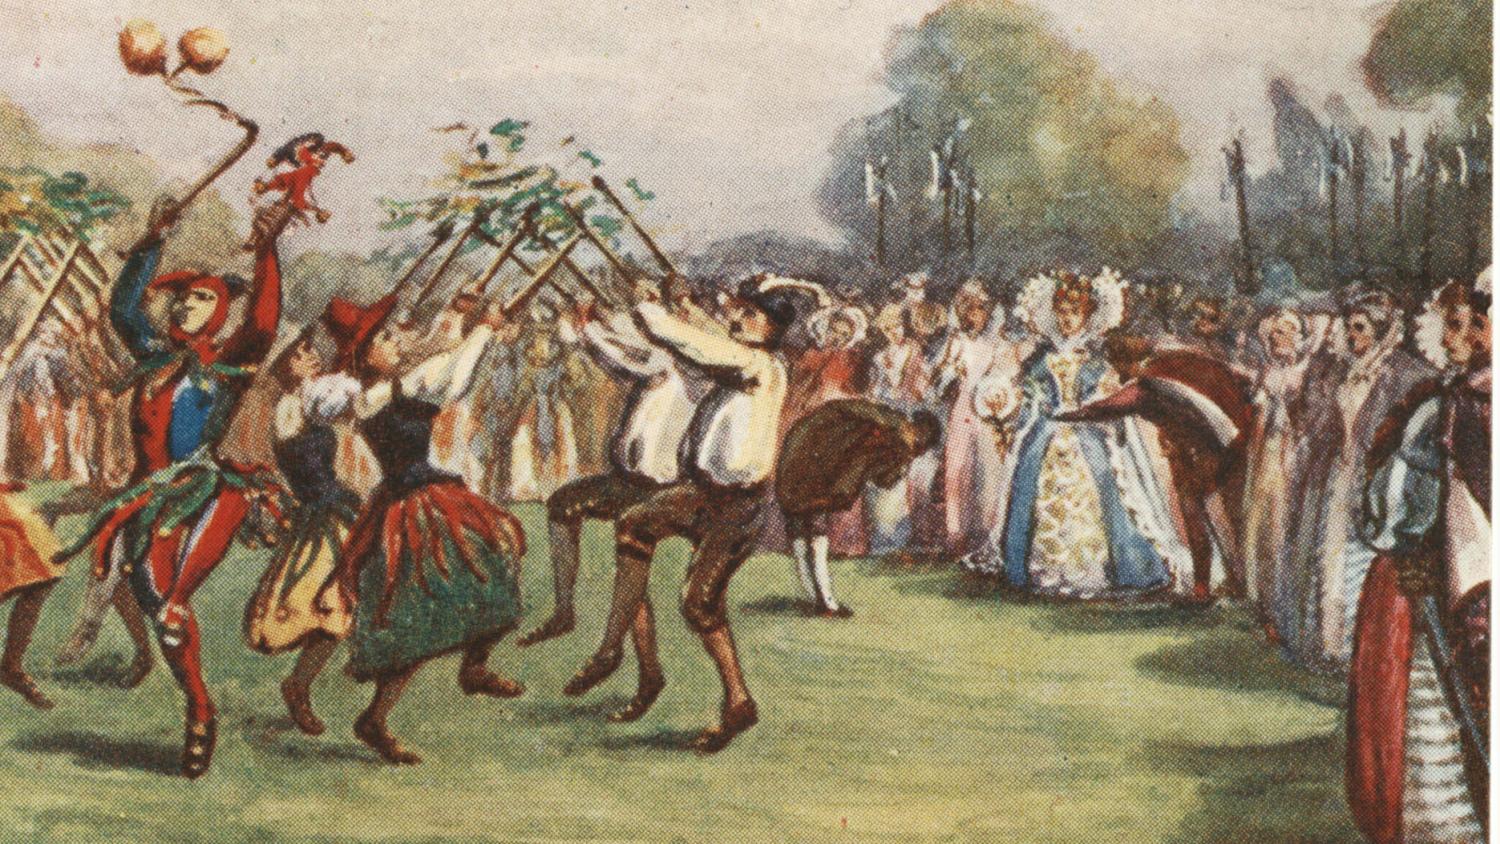 The 1907 St Albans Pageant, a coloure postcard